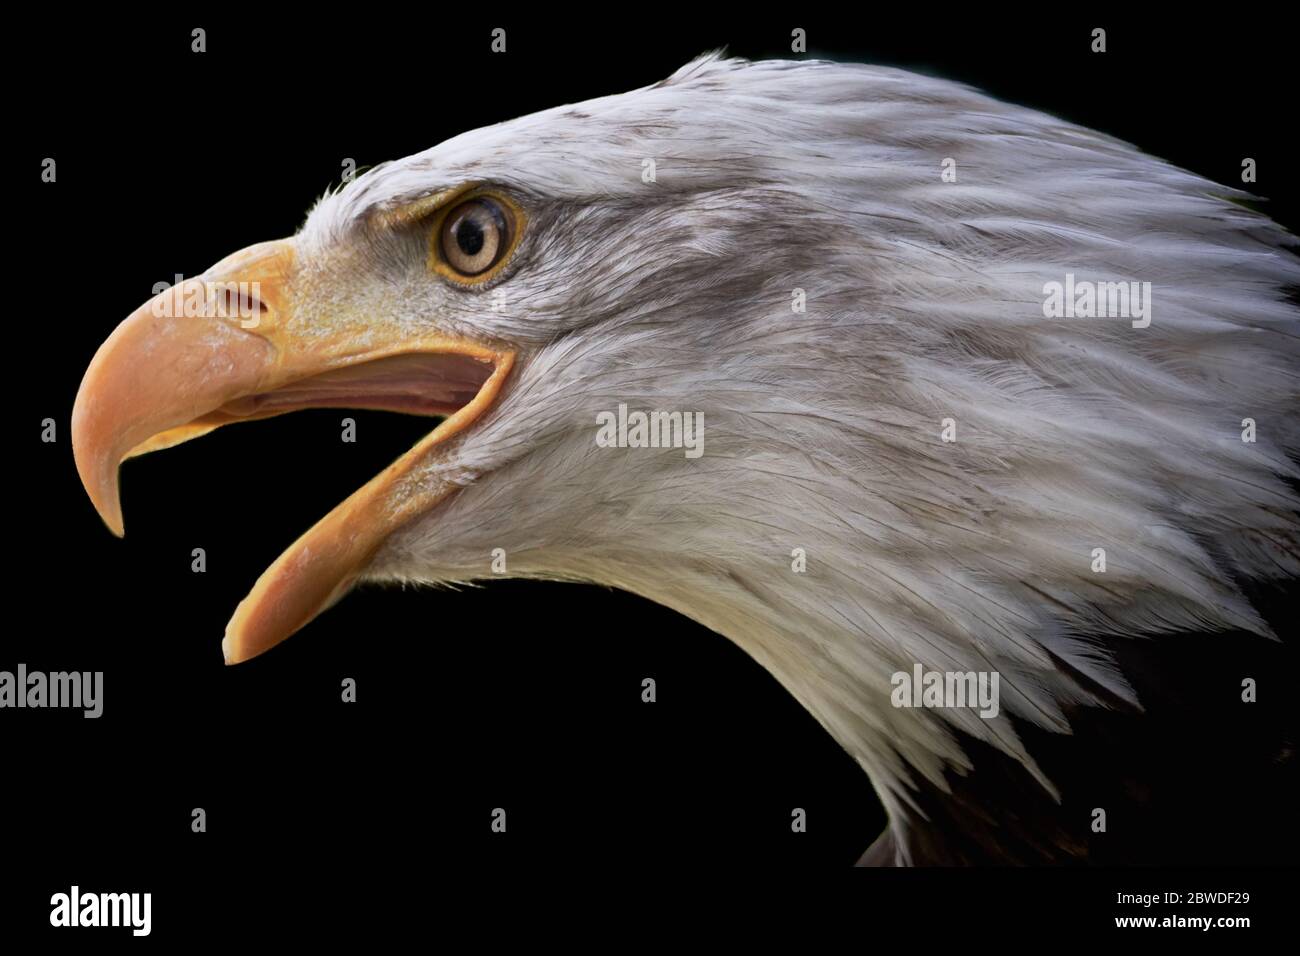 Close-up of screaming bald eagle (Haliaeetus leucocephalus) isolated on black background Stock Photo